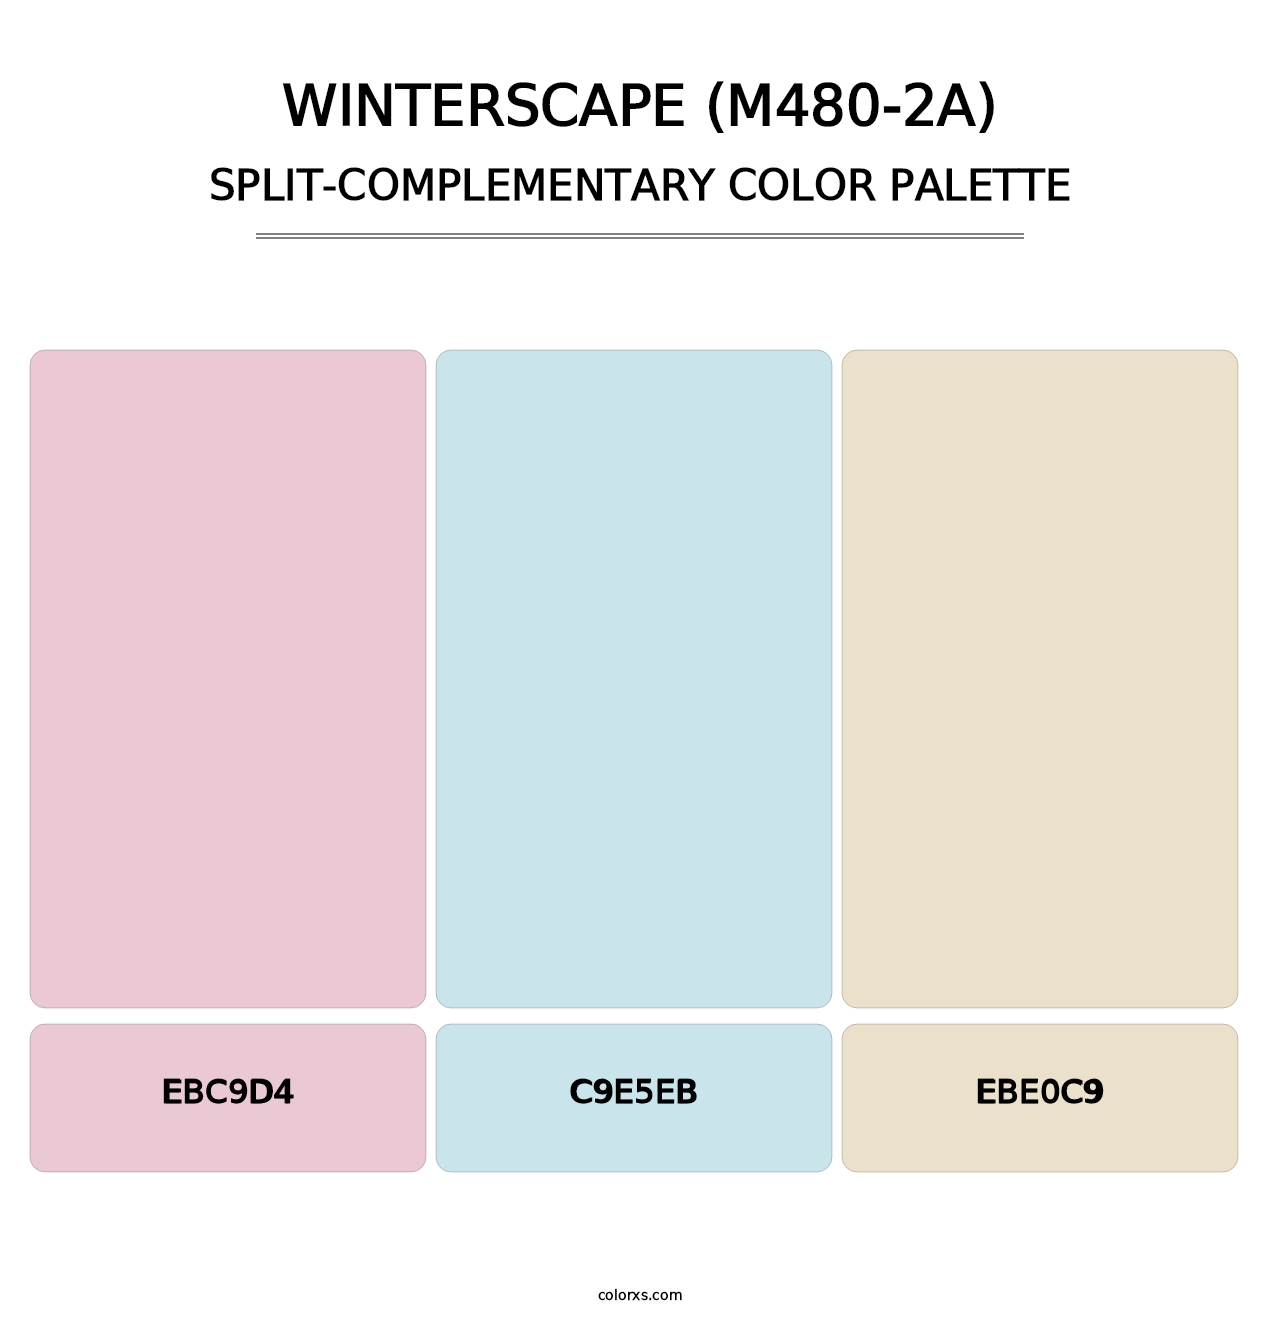 Winterscape (M480-2A) - Split-Complementary Color Palette